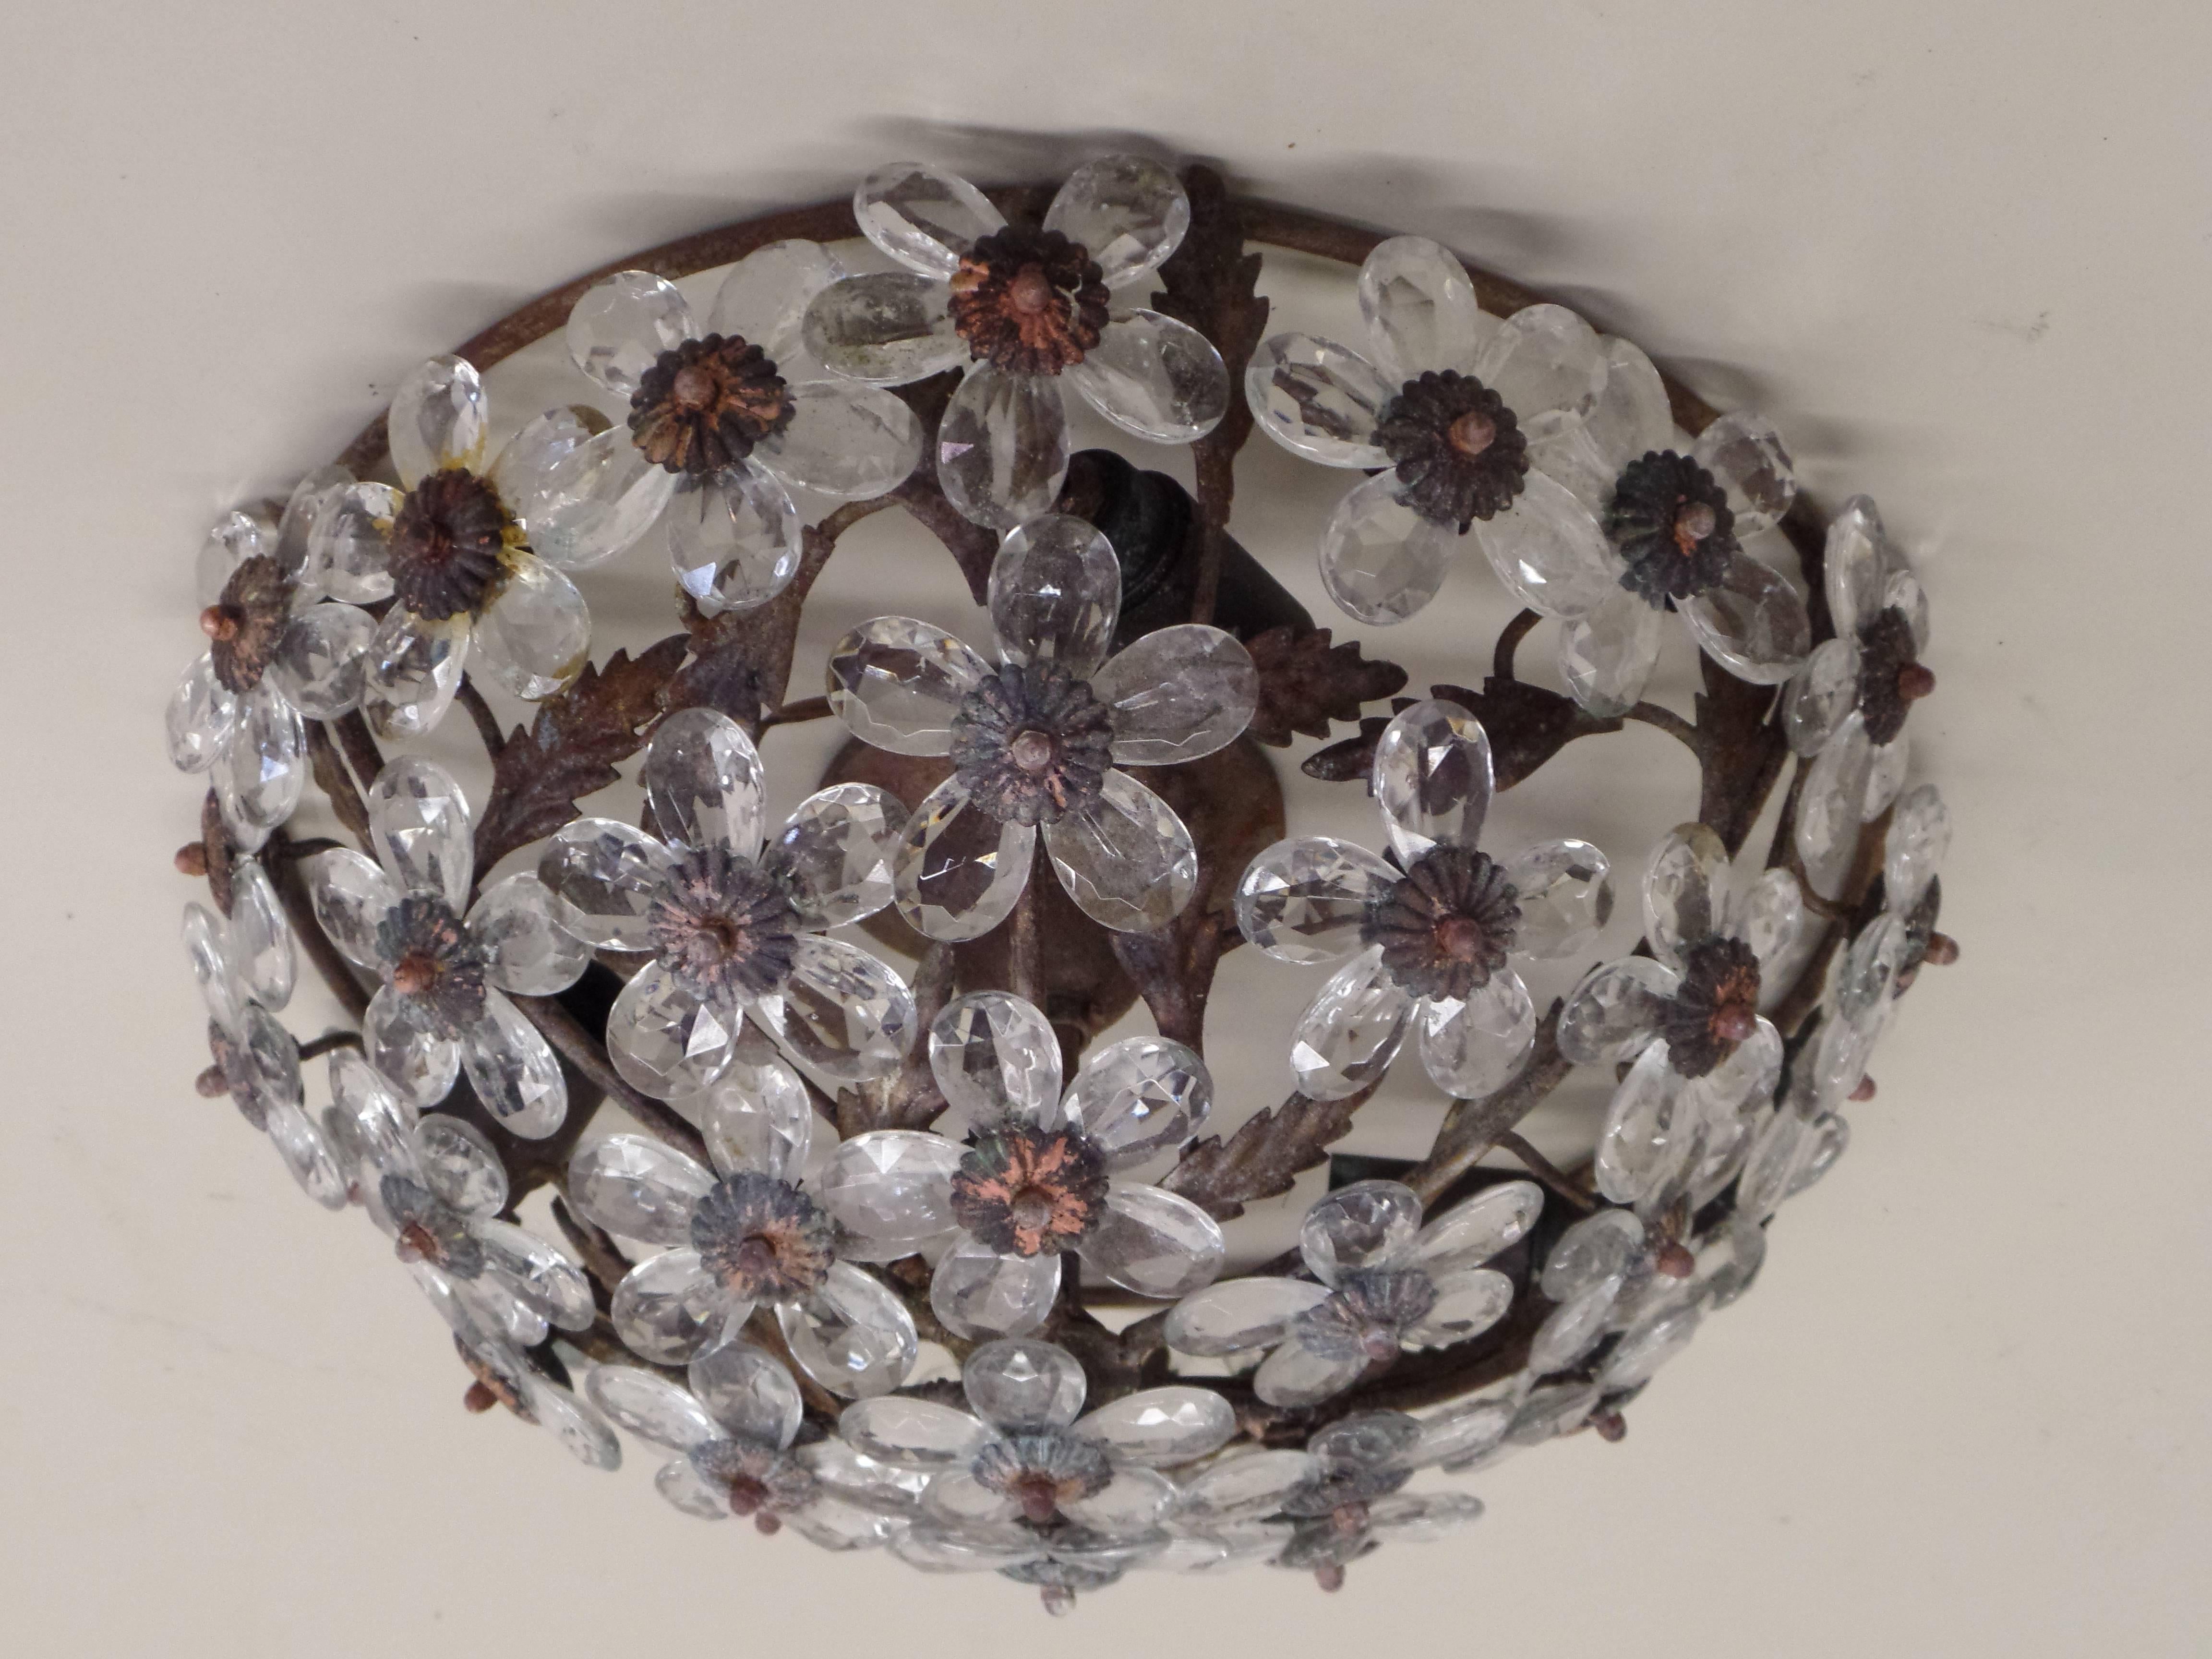 Un luminaire à encastrer en cristal floral italien. Les pétales floraux sont composés de cristal et sertis dans un cadre en fer ancien. 

Cette pièce peut également être montée comme un pendentif via une tige.